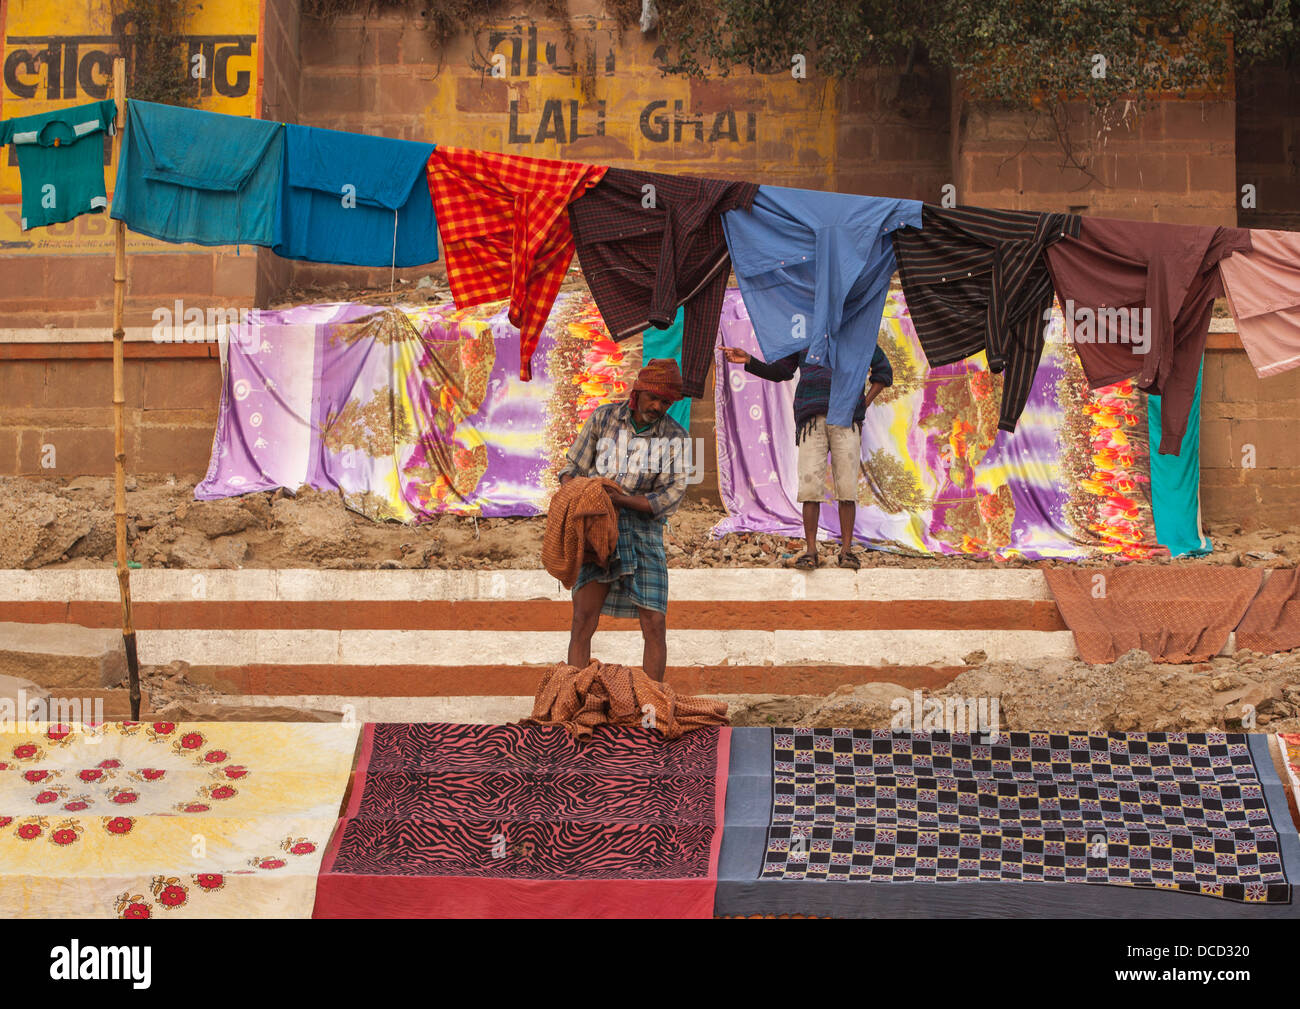 Man Drying Laundry At Lali Ghat, Varanasi, India Stock Photo